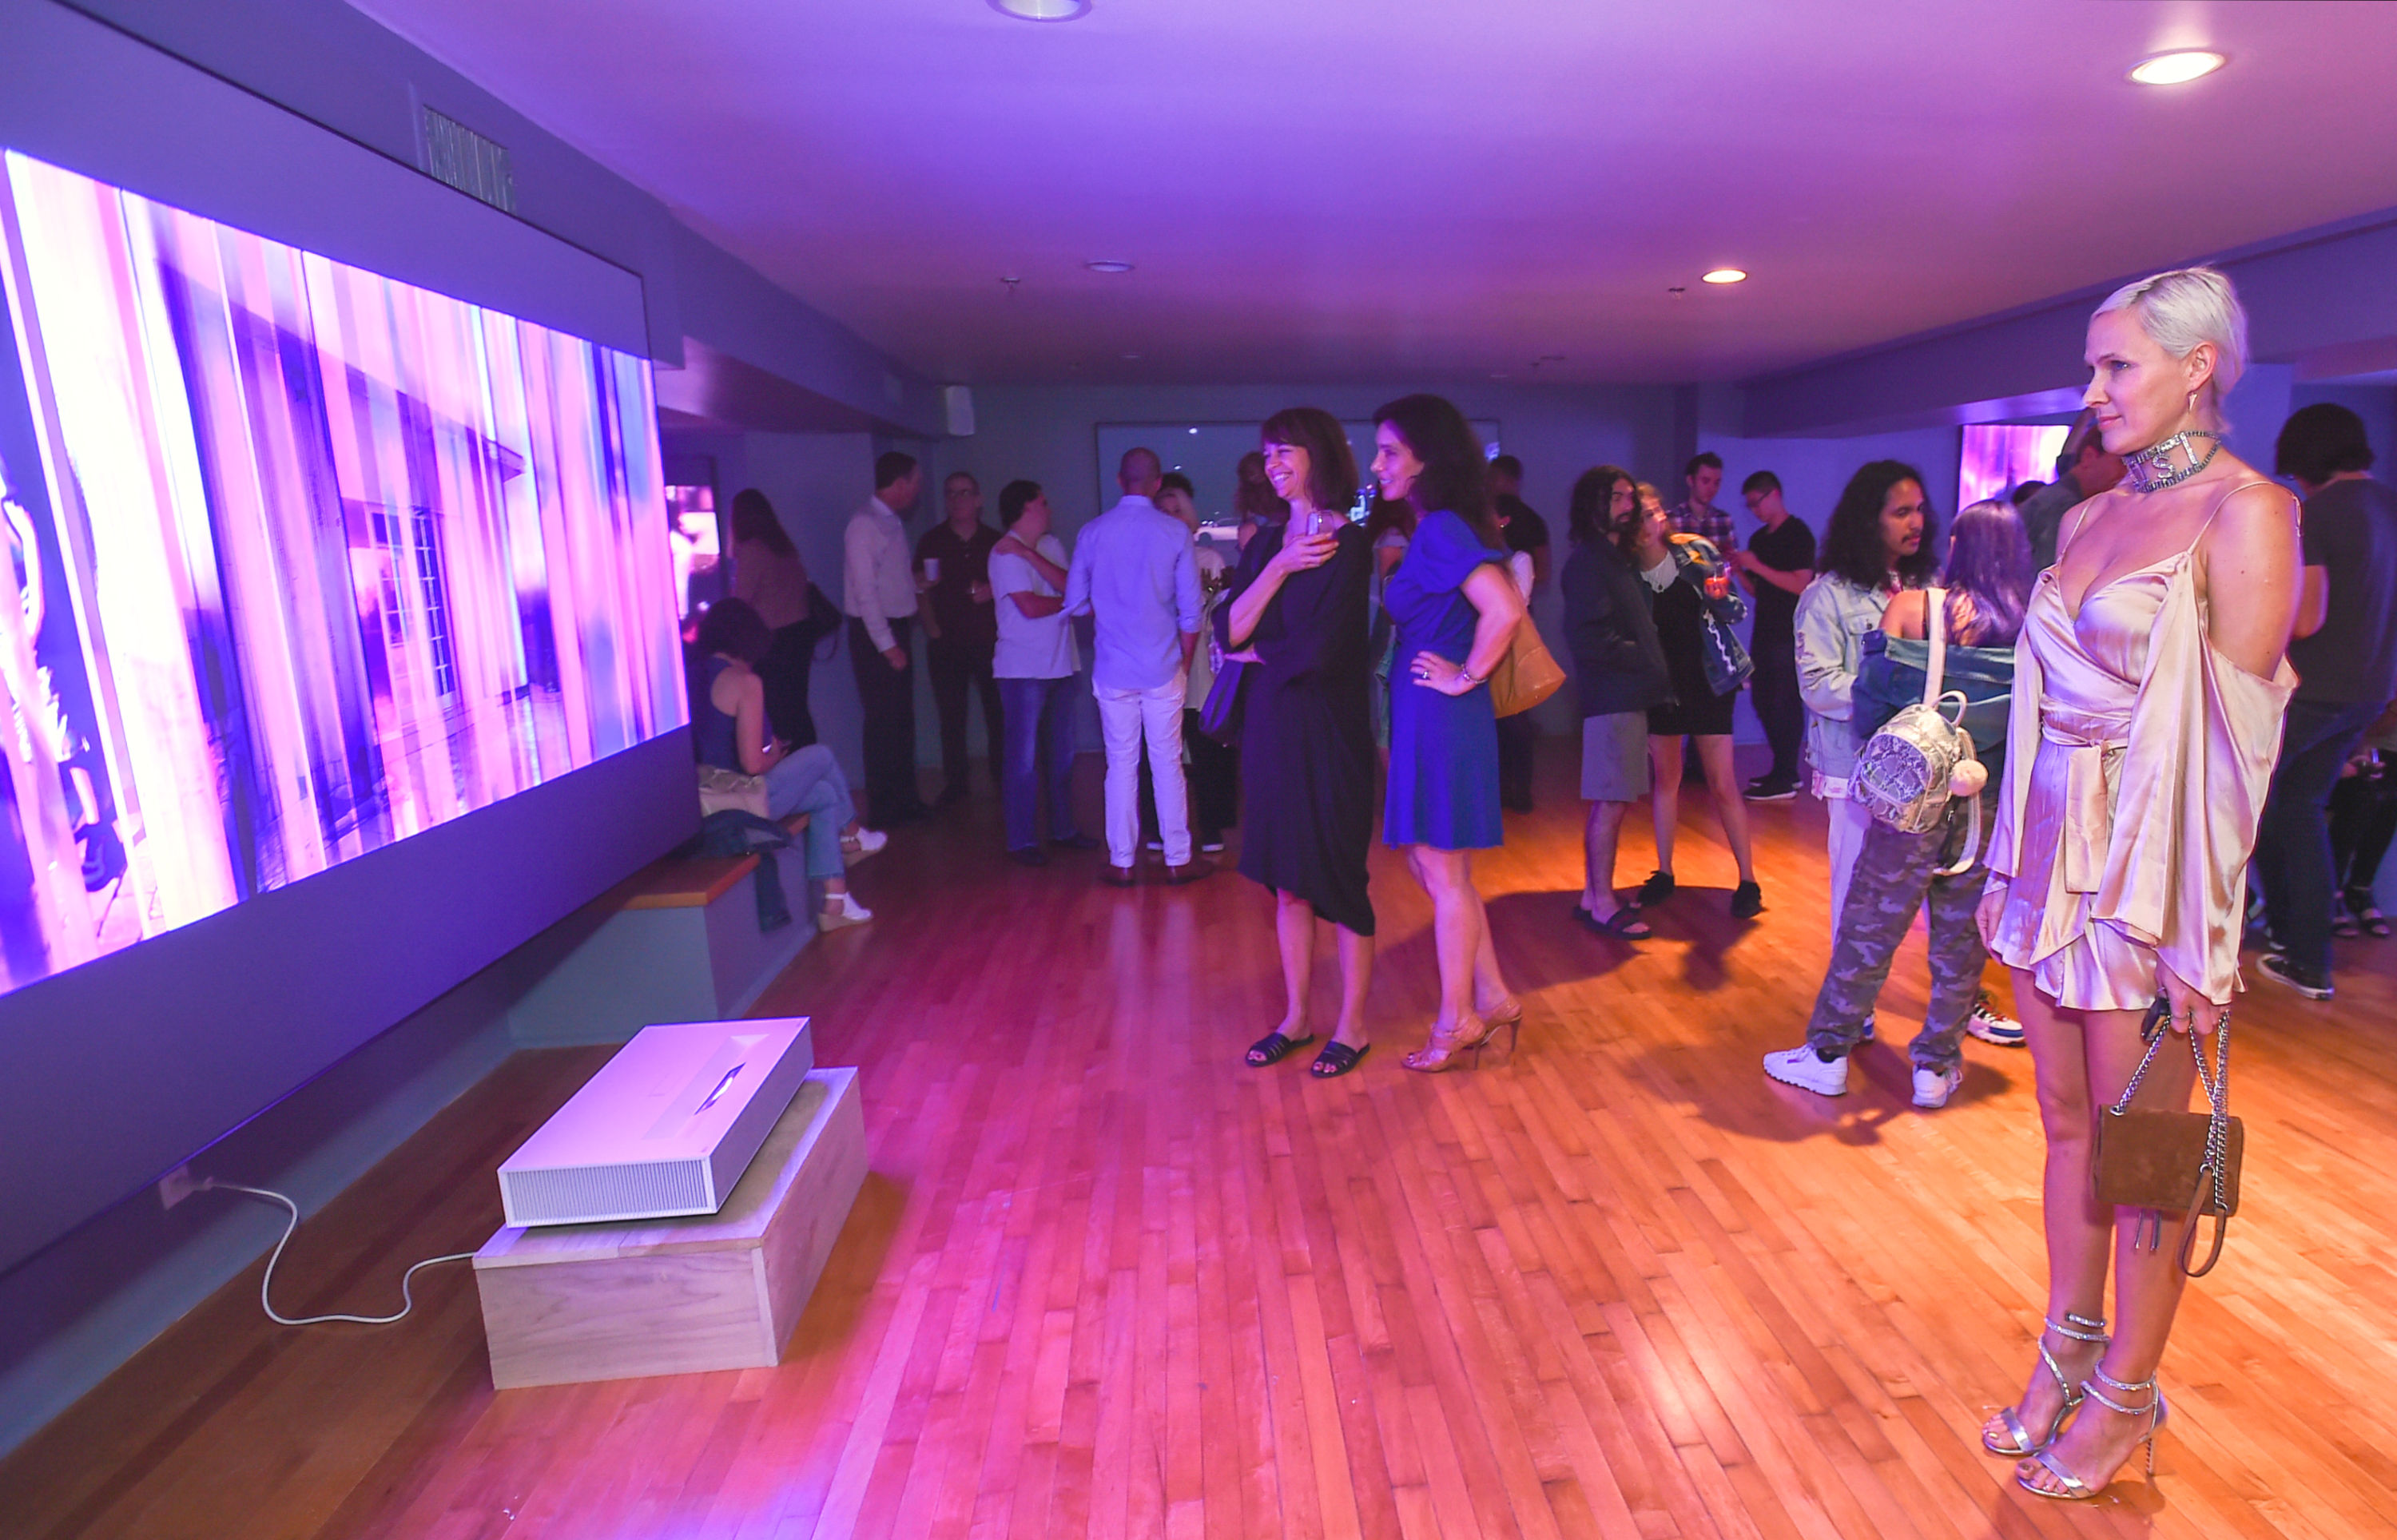  현지시간 24일 미국 산타모니카에서 관람객들이 '데이비드 반 에이슨'의 디지털 아트 작품을 'LG 시네빔 레이저 4K'가 구현한 초대형, 고해상도 화면으로 감상하고 있다. 